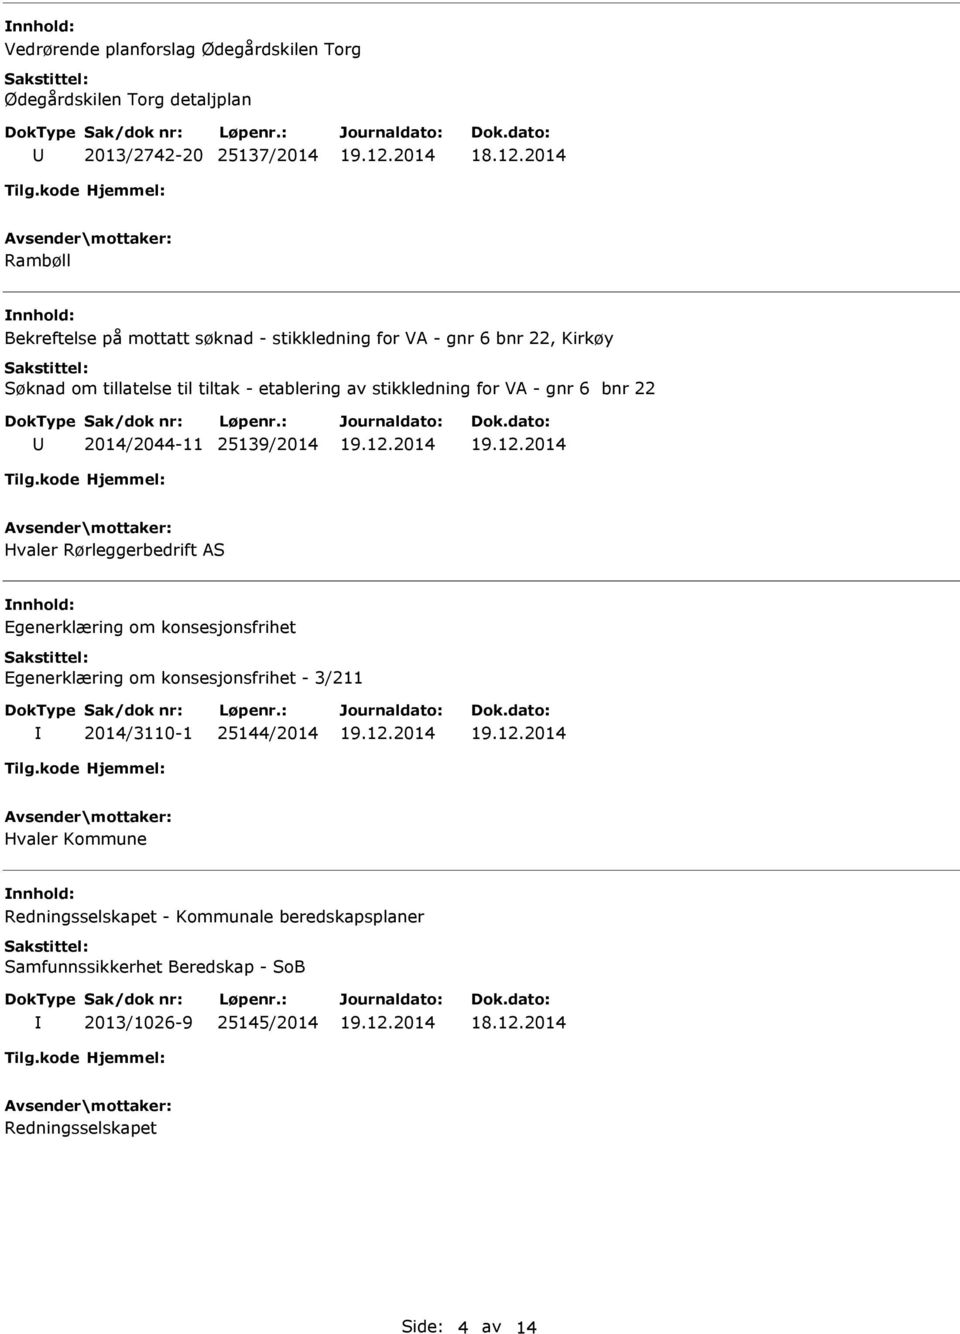 25139/2014 Hvaler Rørleggerbedrift AS Egenerklæring om konsesjonsfrihet Egenerklæring om konsesjonsfrihet - 3/211 2014/3110-1 25144/2014